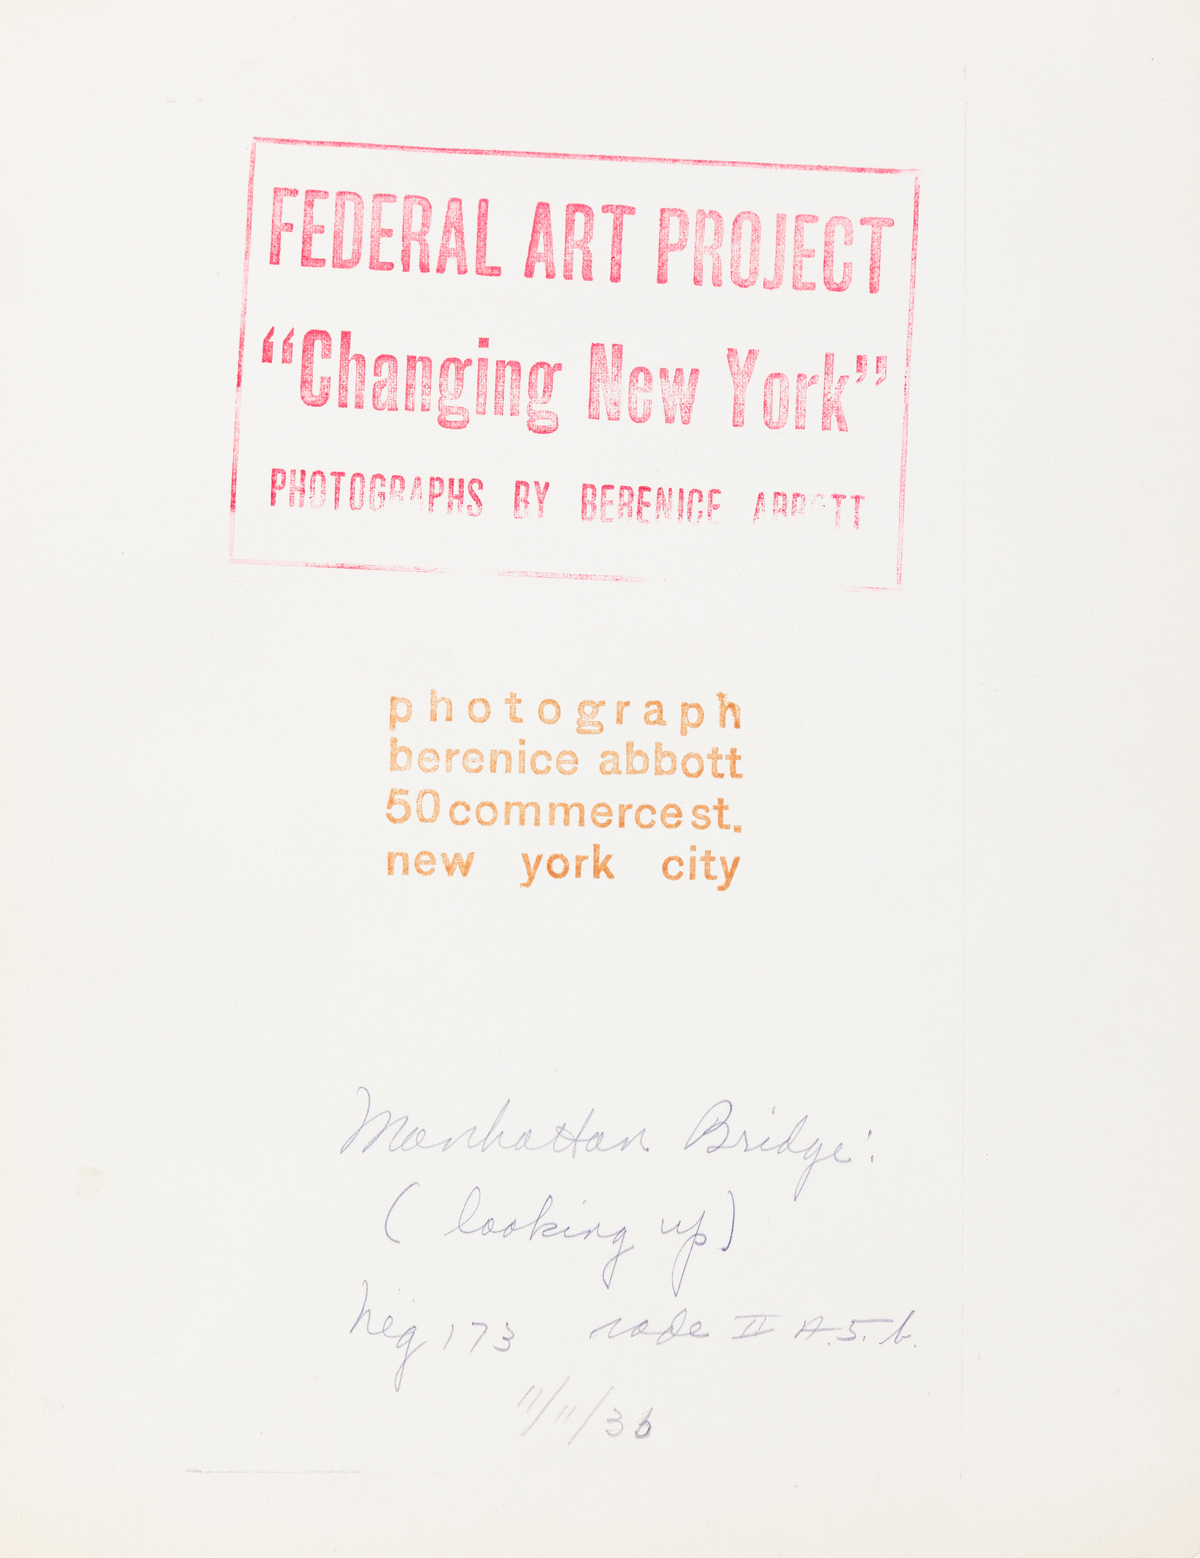 BERENICE ABBOTT (1898-1991) Manhattan Bridge (looking up).